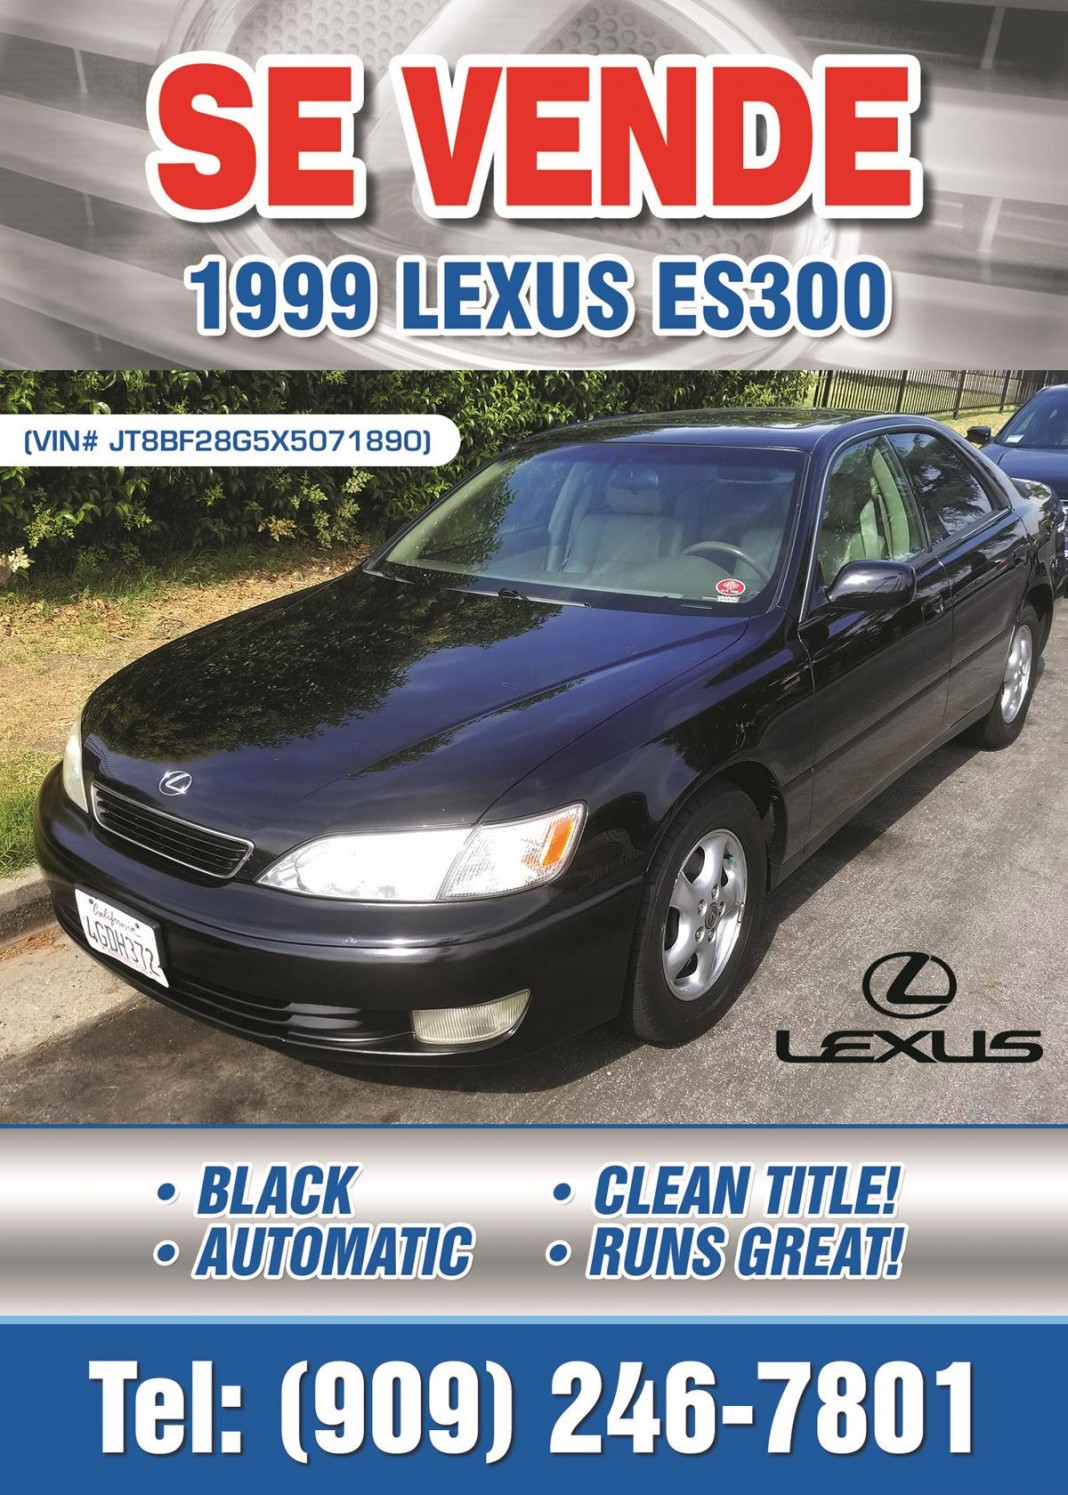 Se Vende 1999 LEXUS ES300